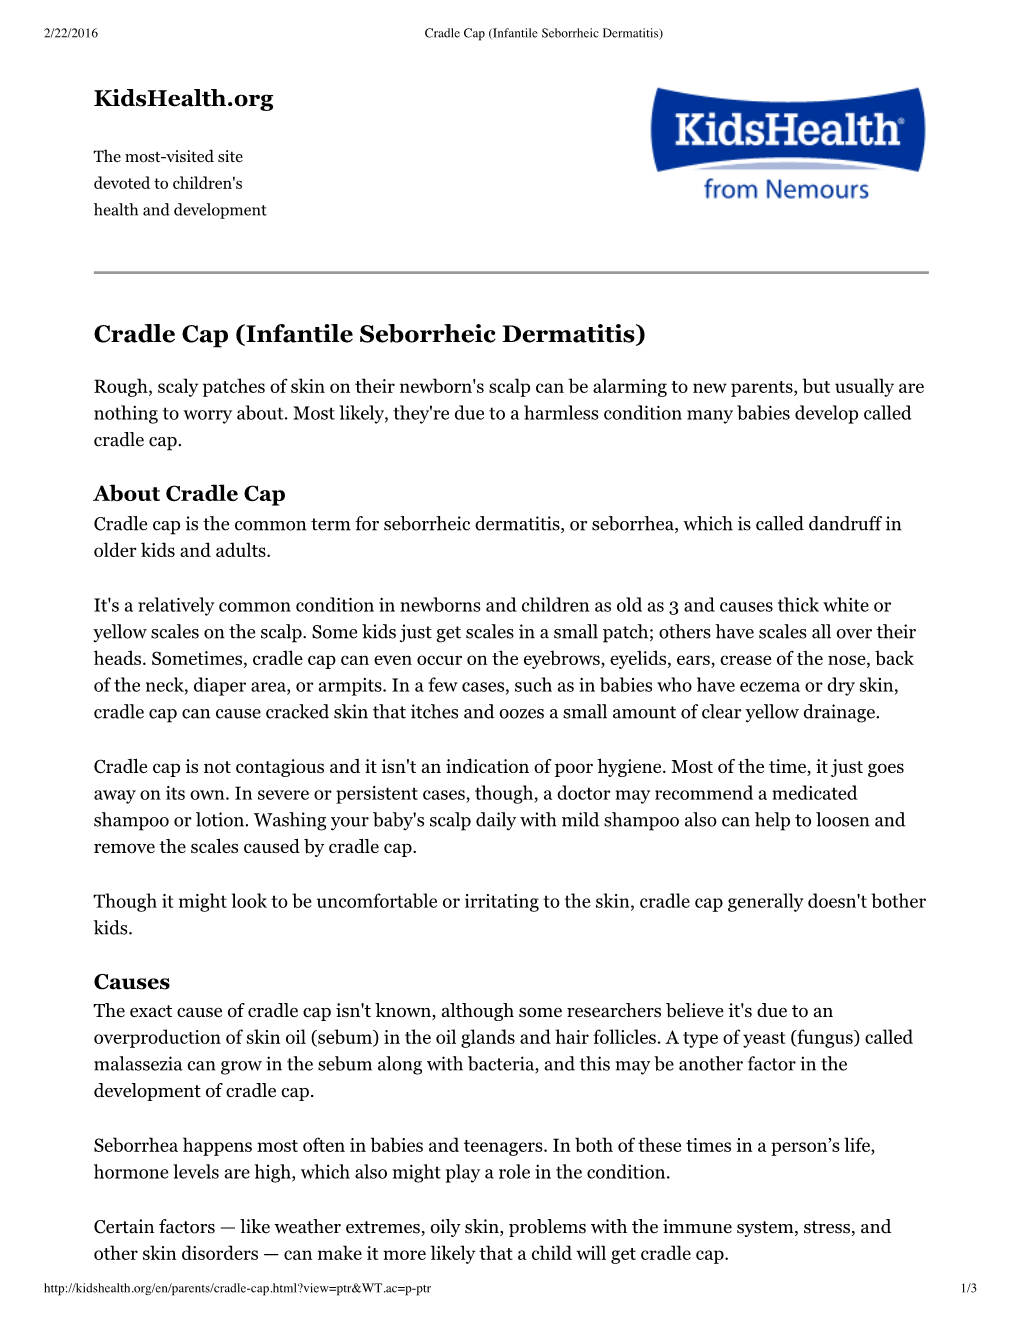 Cradle Cap (Infantile Seborrheic Dermatitis)